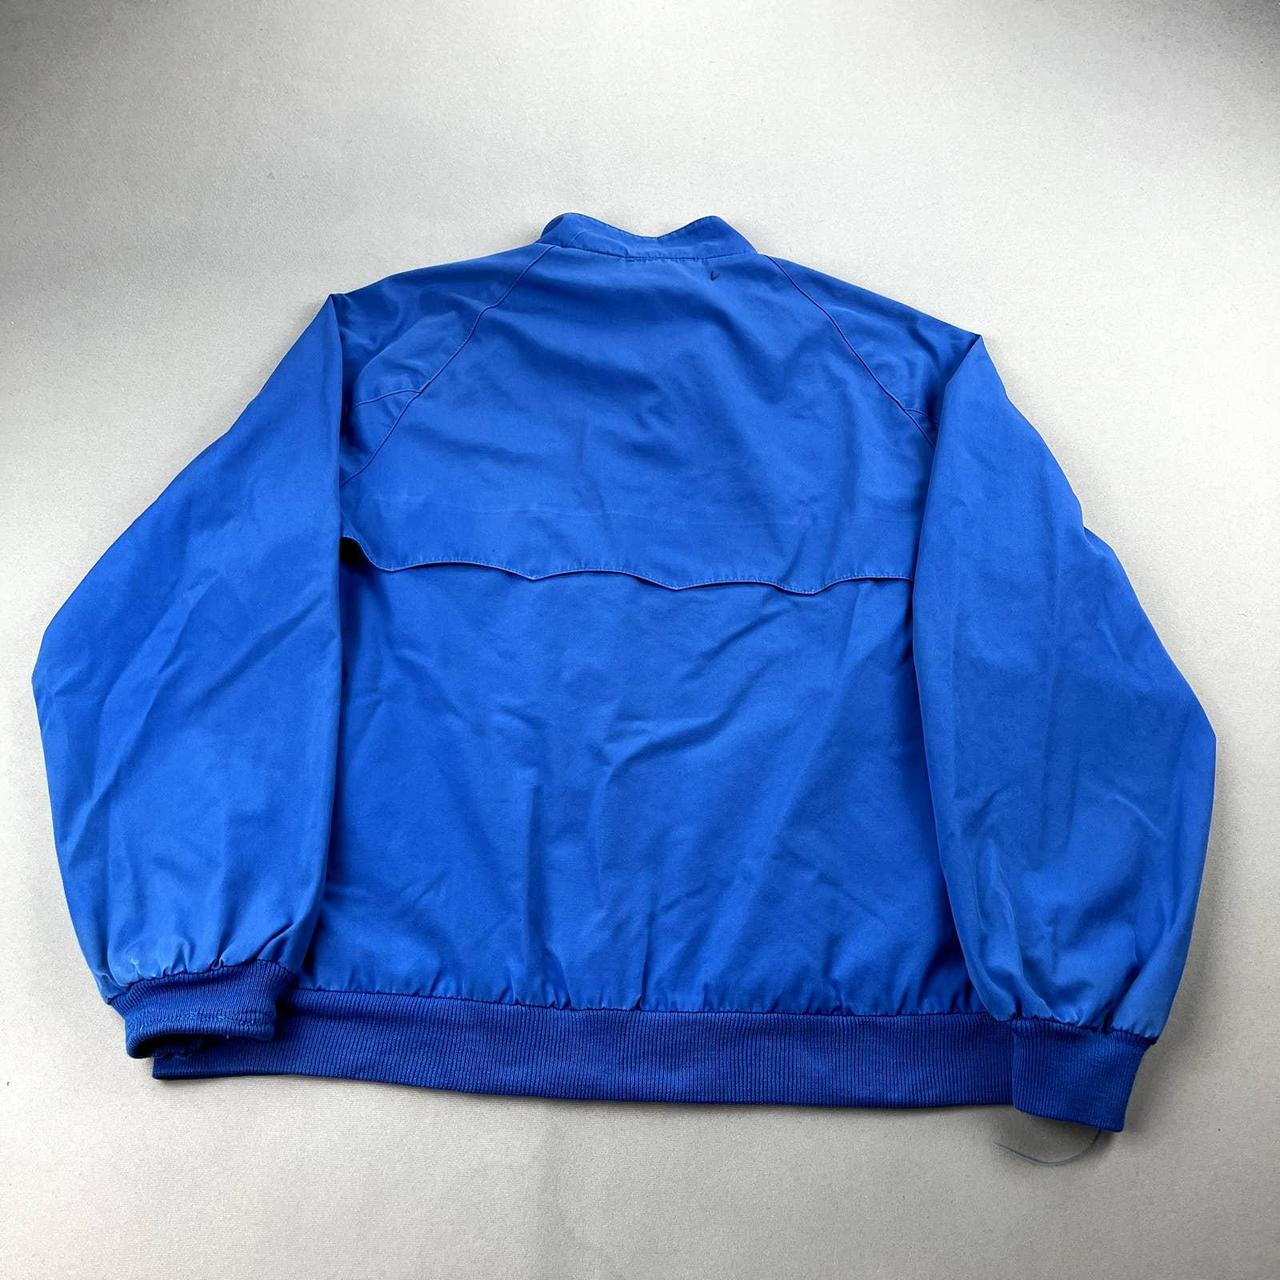 Lacoste Men's Blue Jacket | Depop